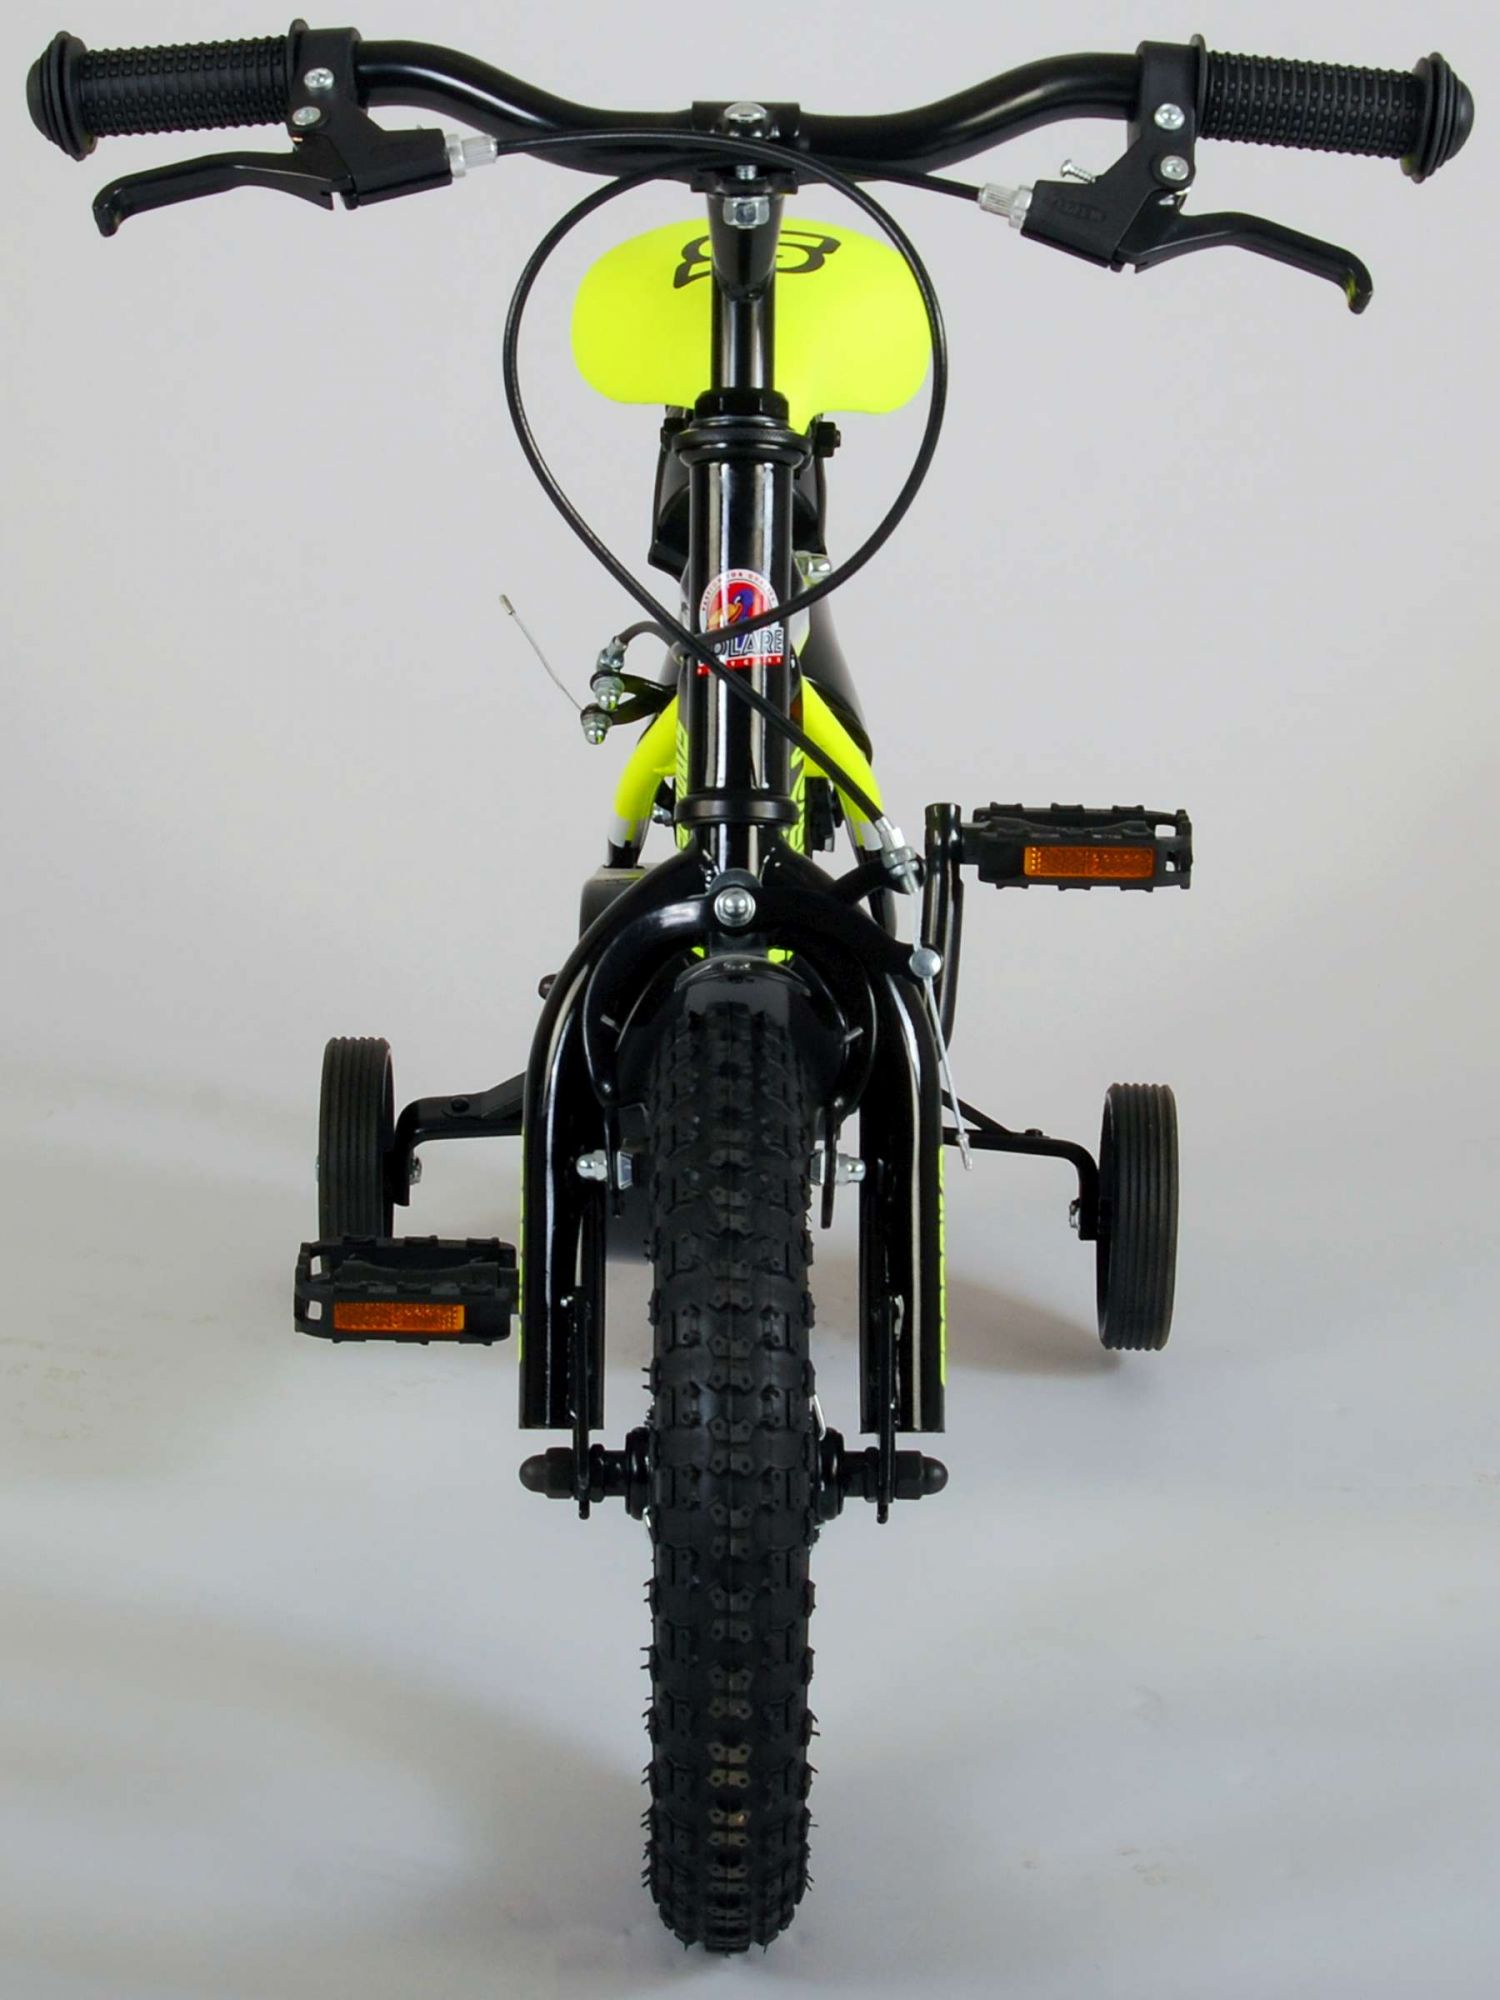 Kinderfahrrad Sportivo für Jungen 12 Zoll Kinderrad Neon Gelb Schwarz